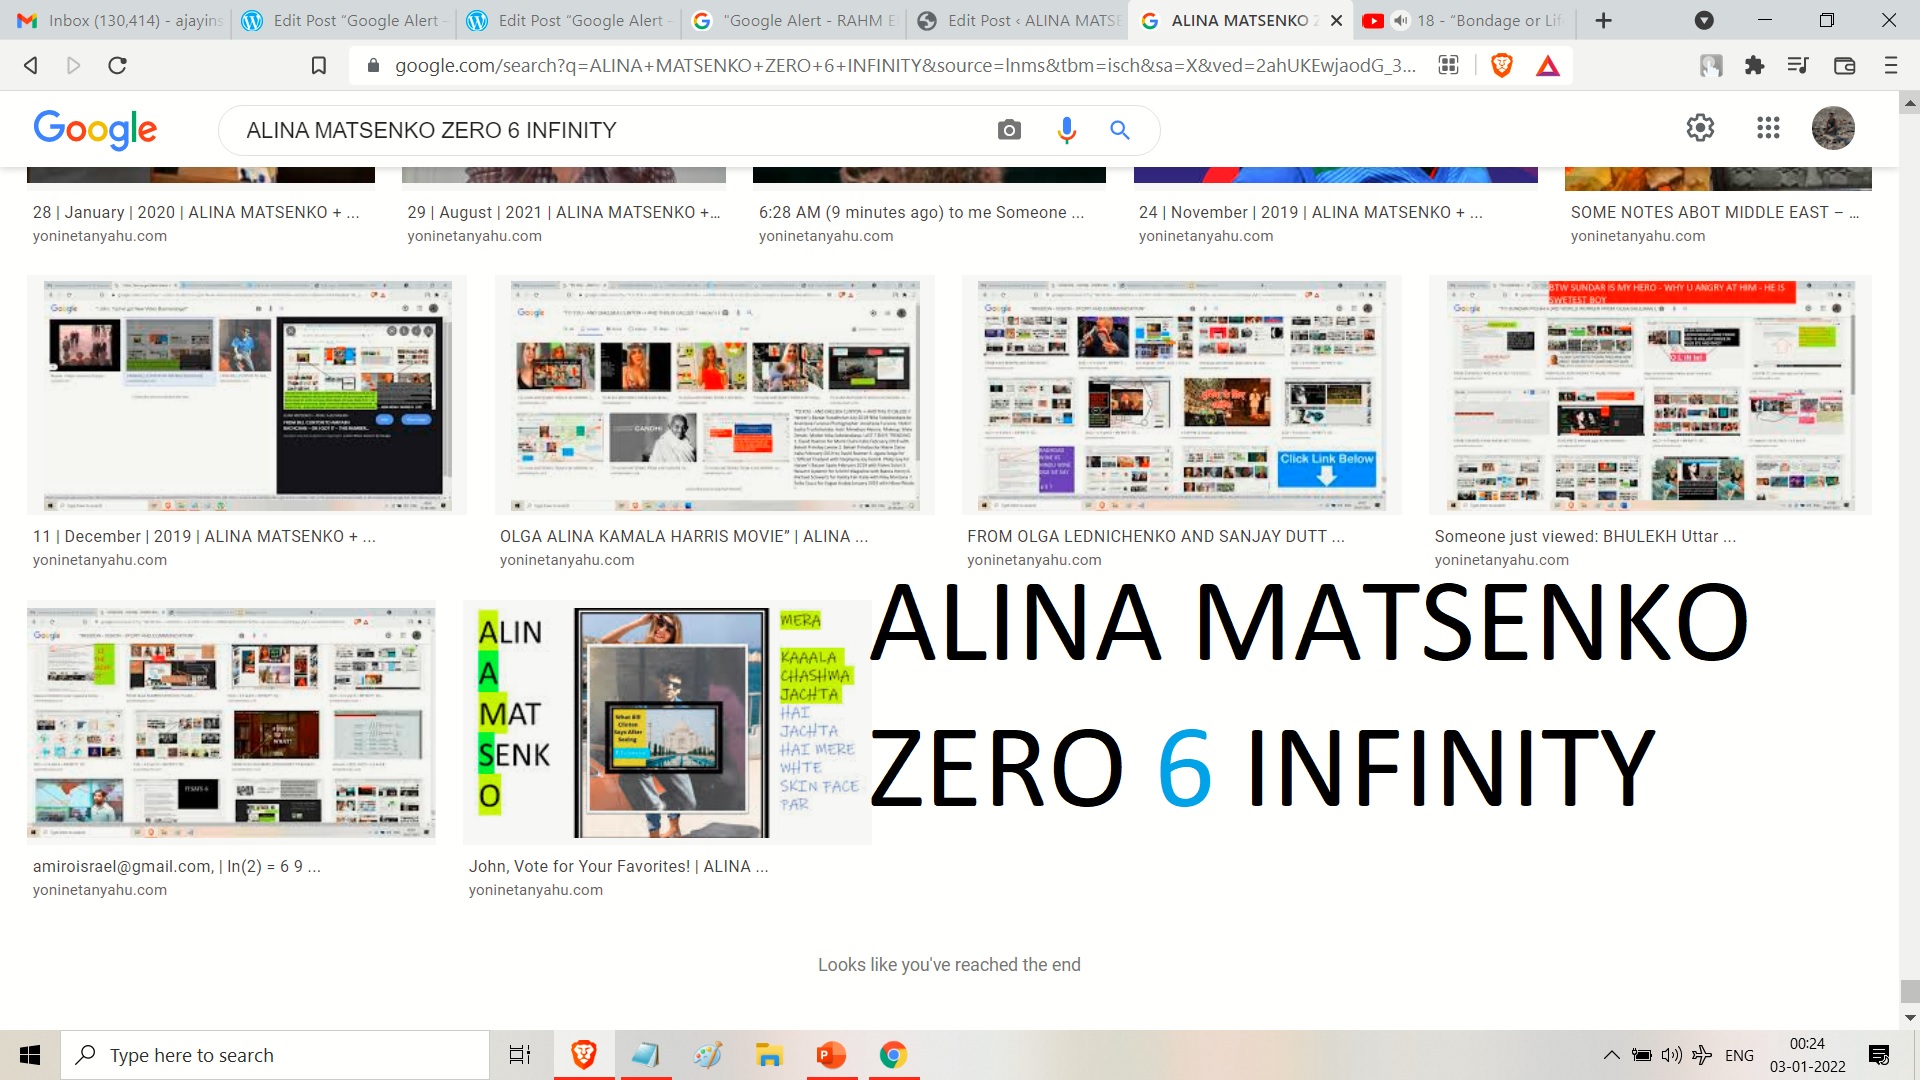 ALINA MATSENKO ZERO 6 INFINITY -